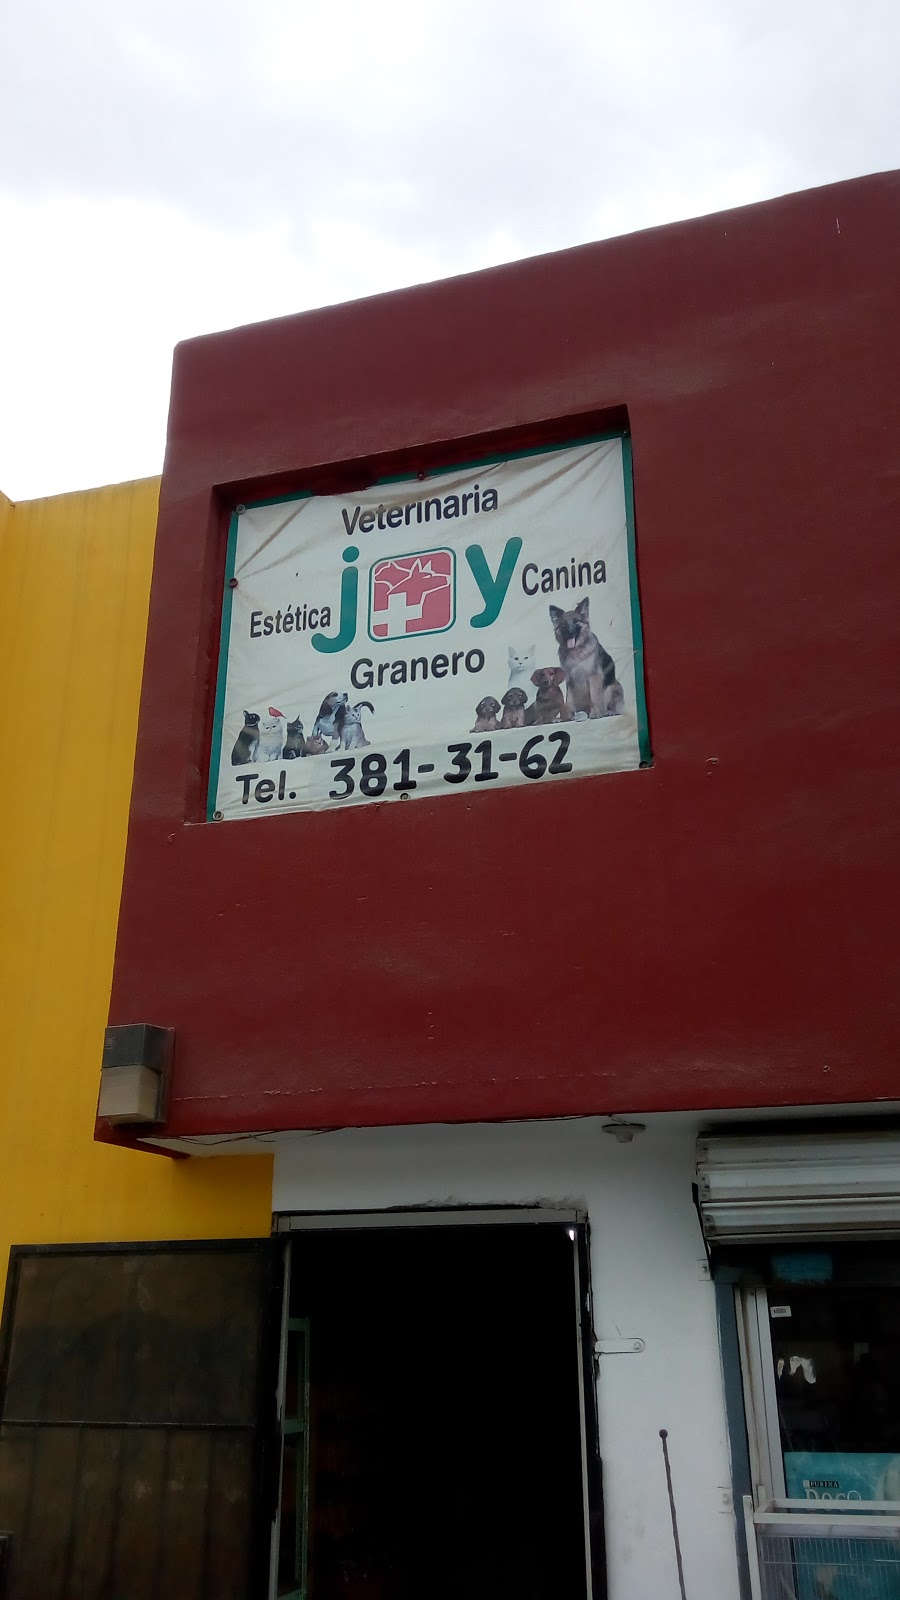 VETERINARIA GRANERO Y ESTETICA JOY. | Tijuana, Hacienda Las Delicias, 22163 Las delicias, B.C., Mexico | Phone: 664 381 3162